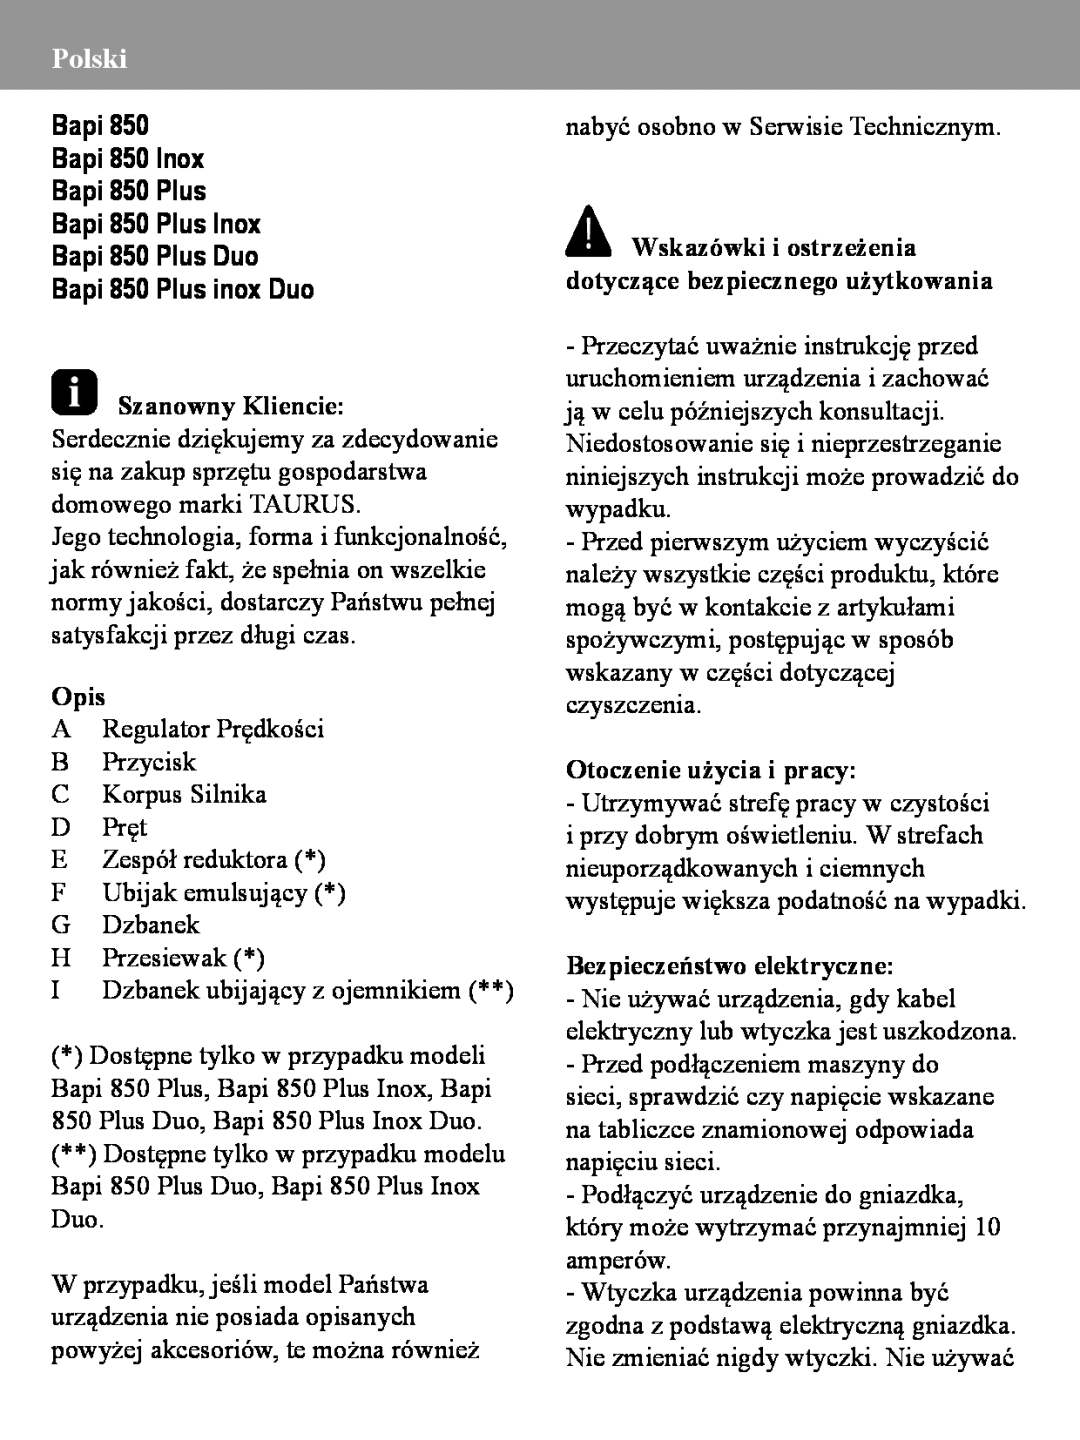 Taurus Group manual Polski, Bapi 850 Plus inox Duo, Szanowny Kliencie, Opis, Otoczenie użycia i pracy 